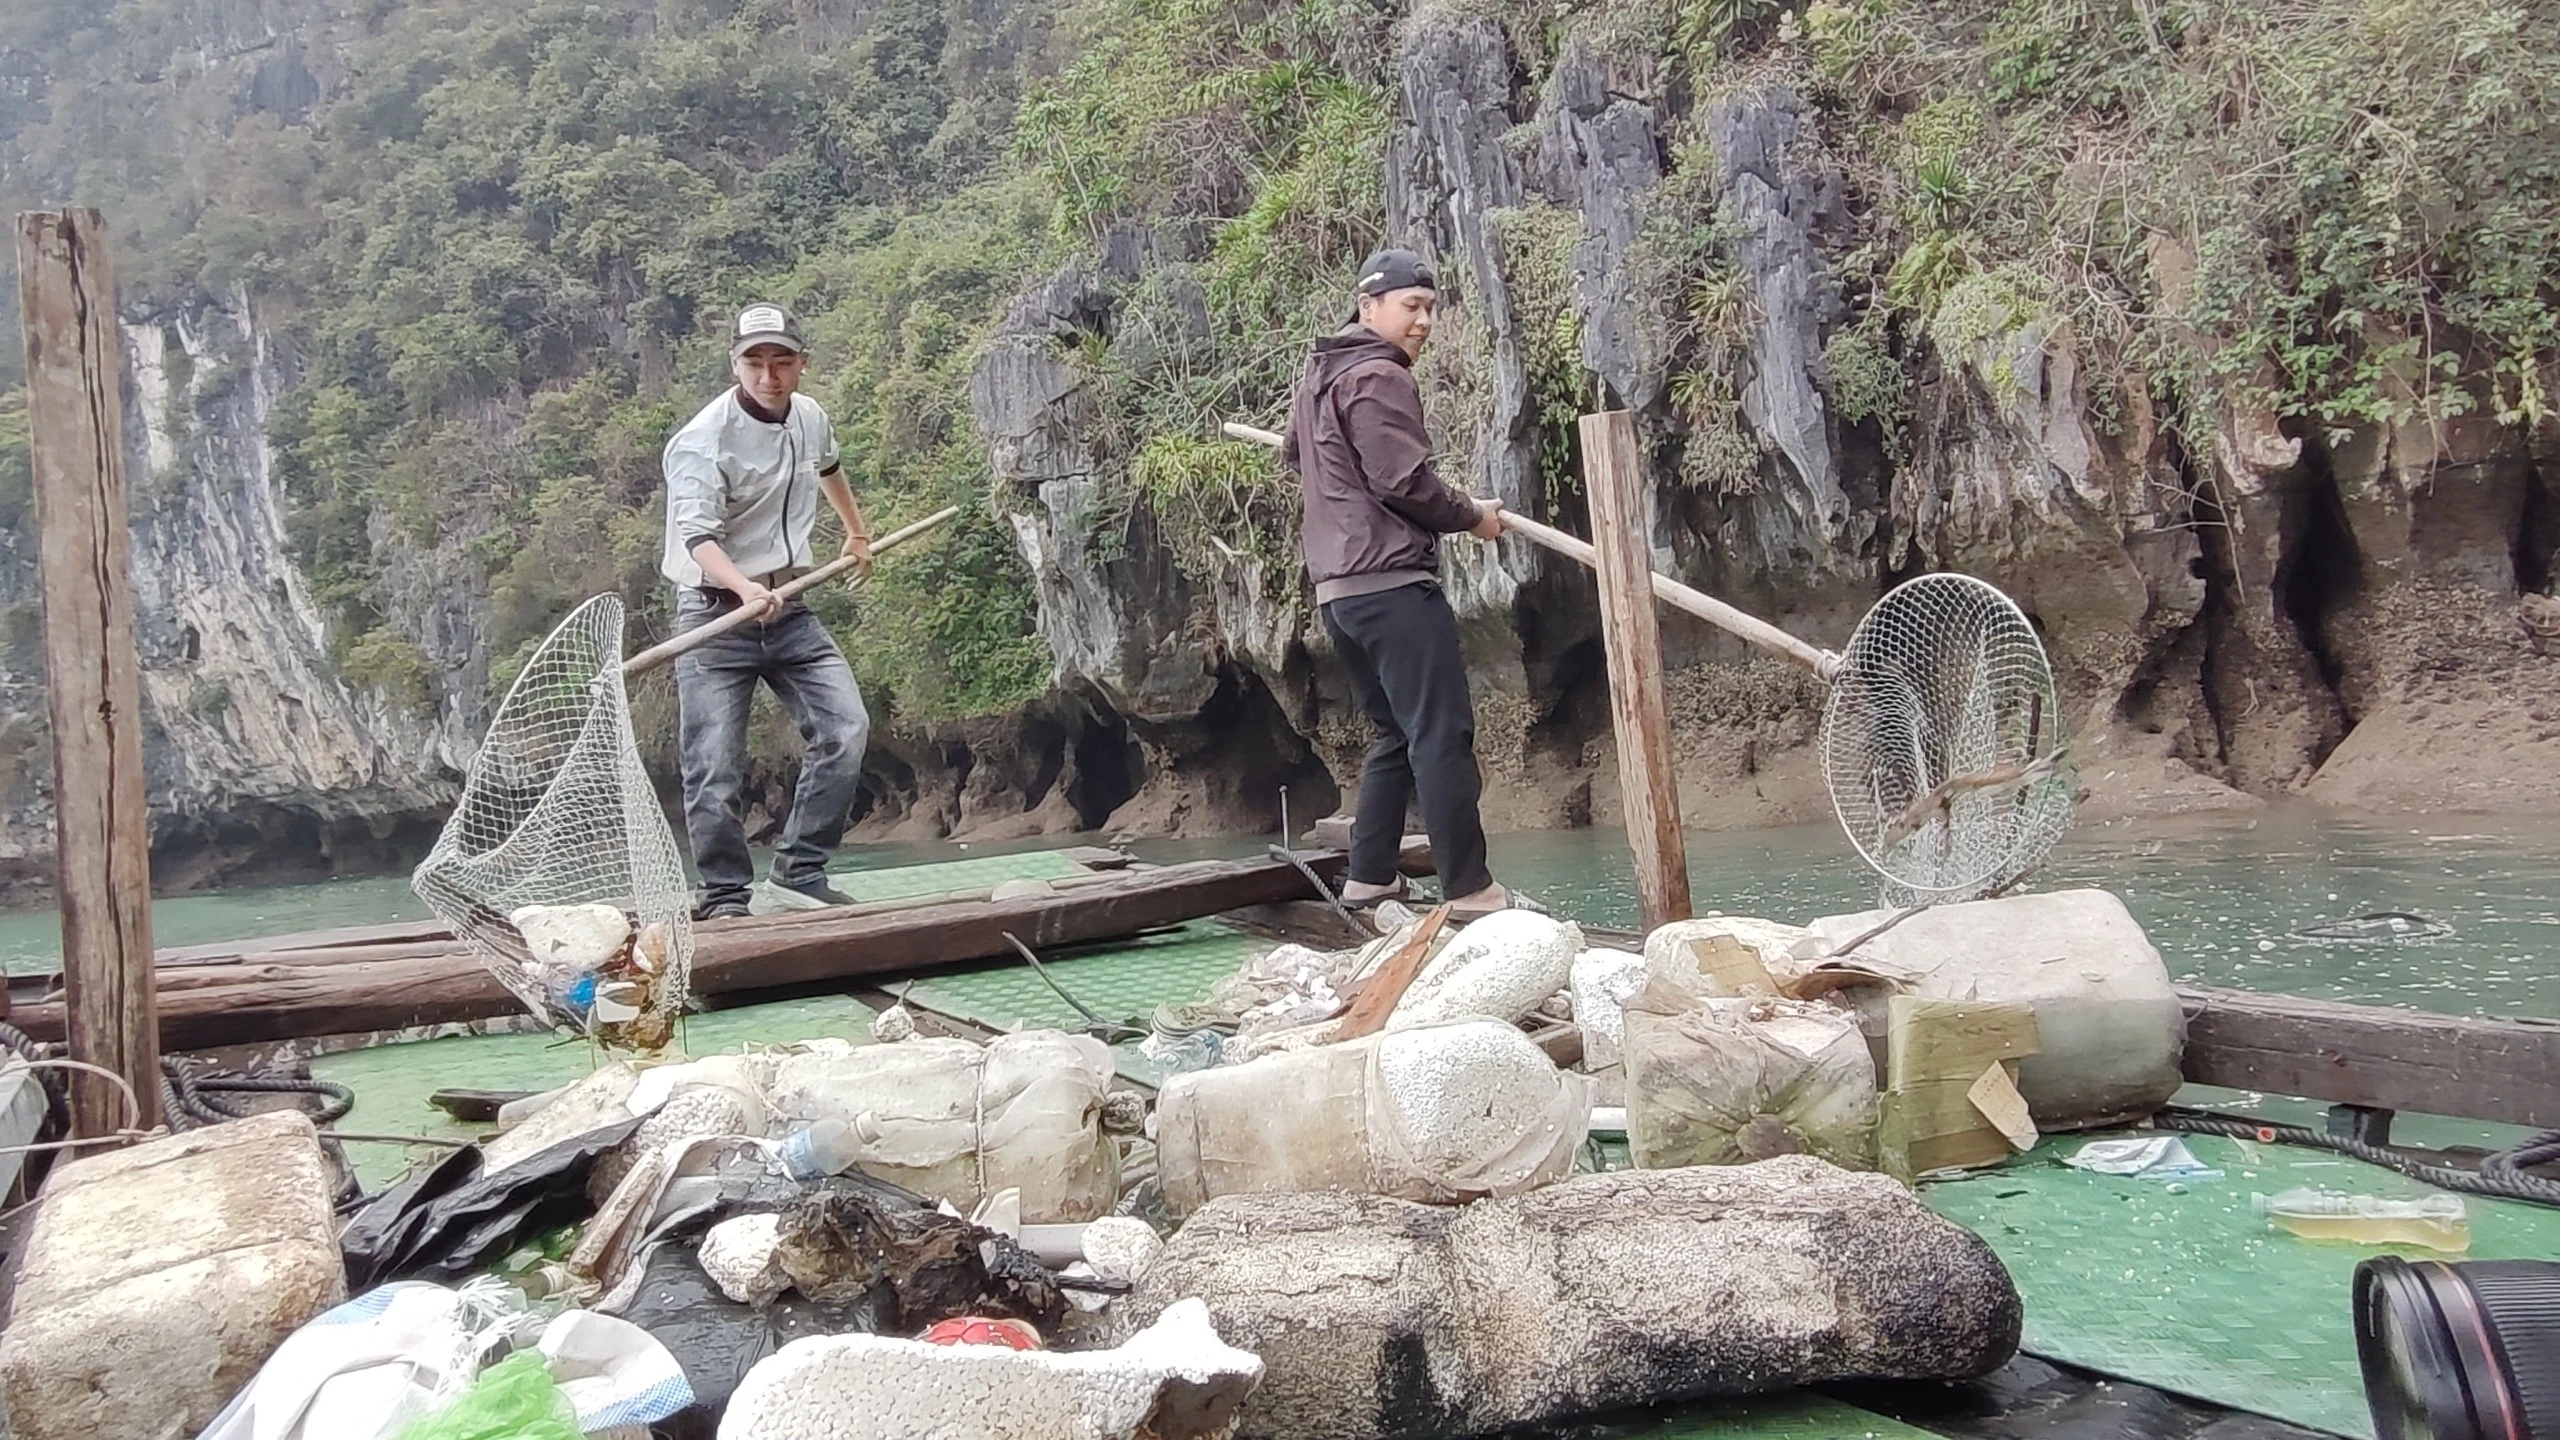 Mở đợt cao điểm dọn vệ sinh môi trường di sản vịnh Hạ Long